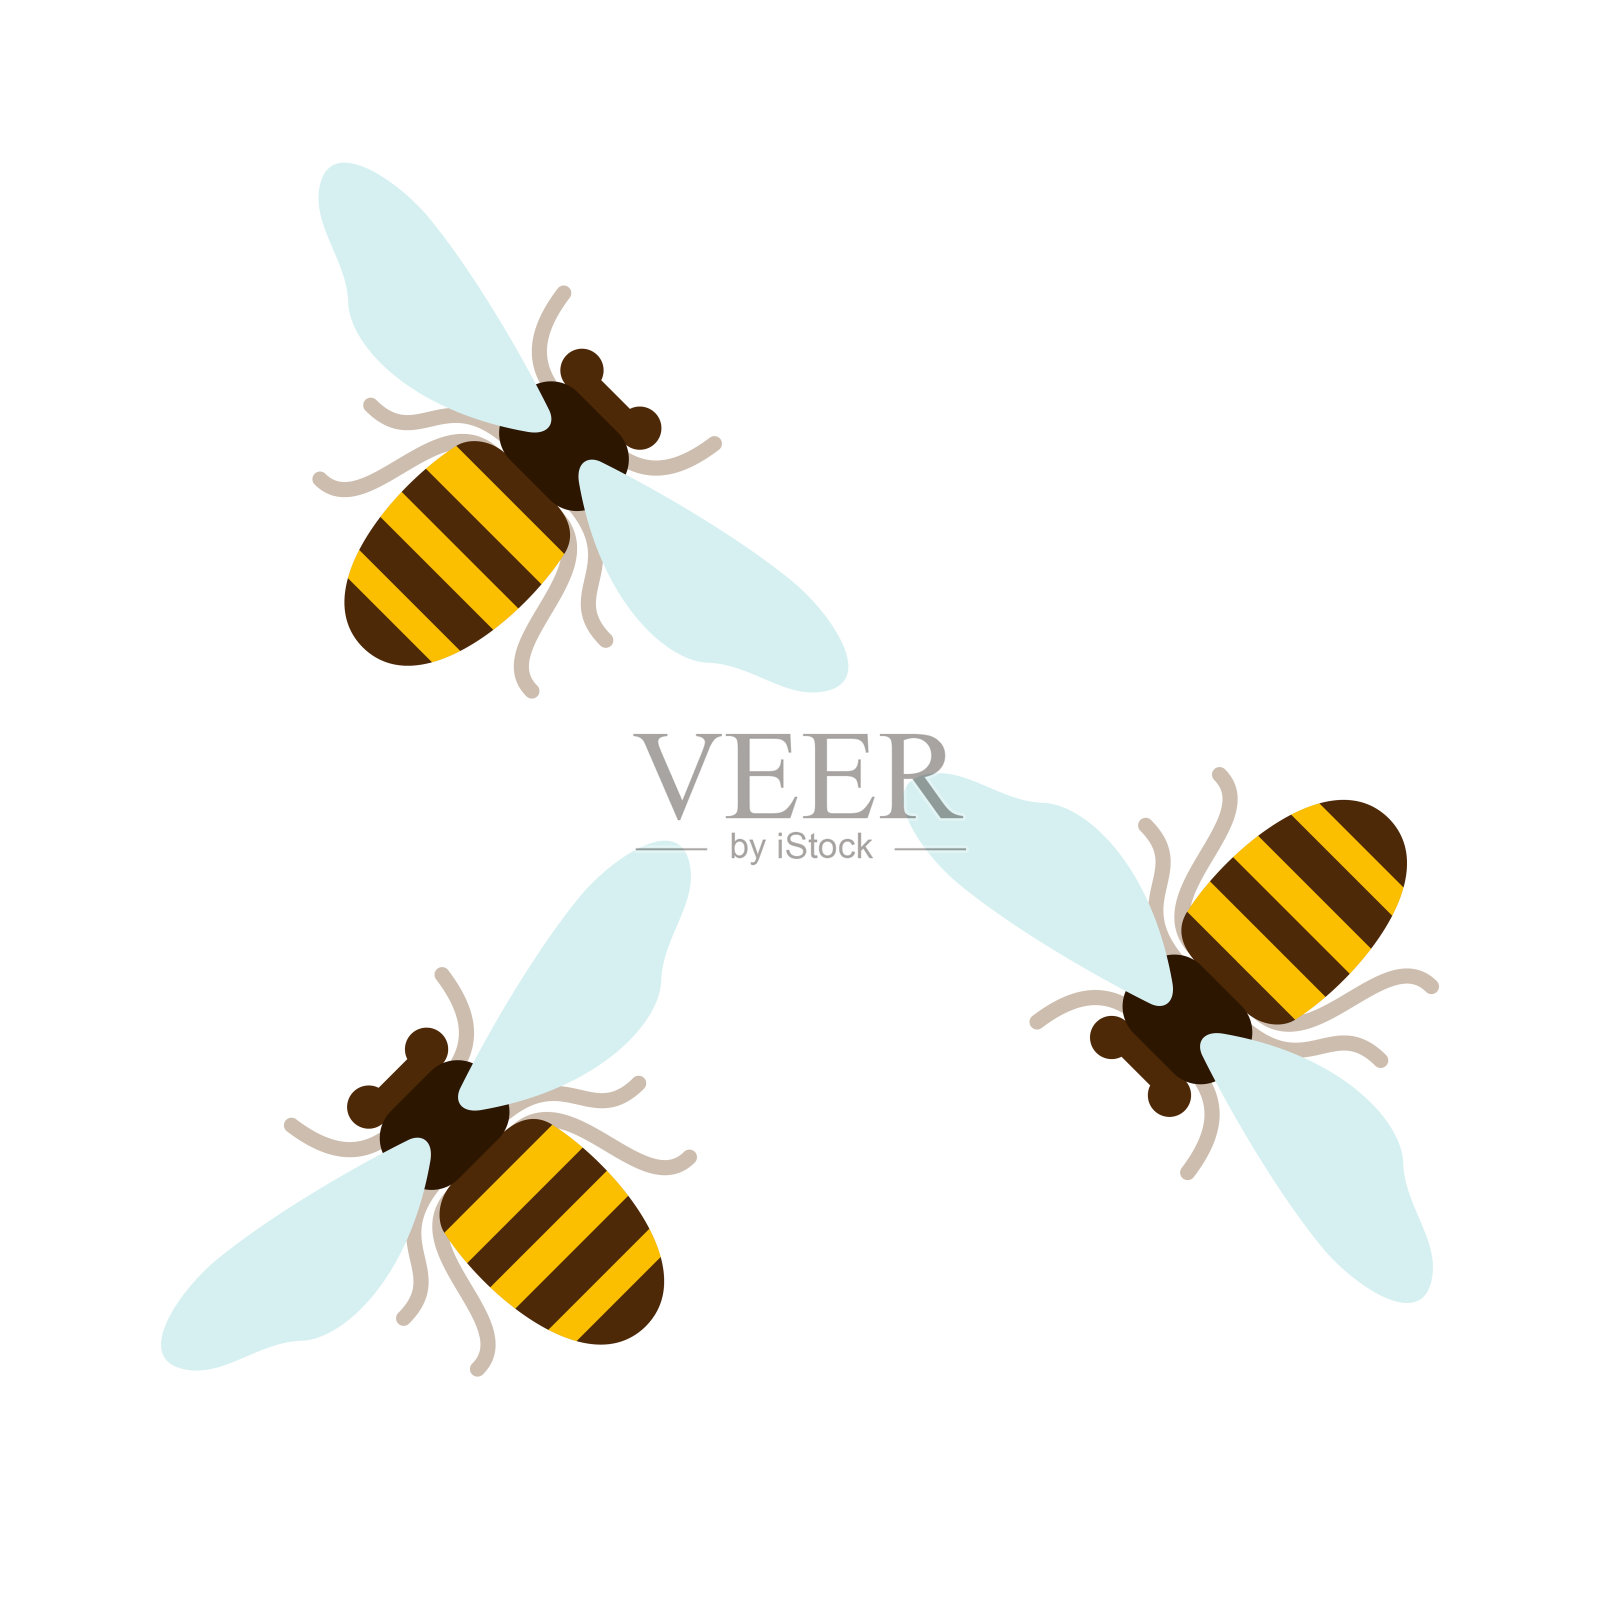 三只飞行的蜜蜂俯瞰平面孤立设计元素图片